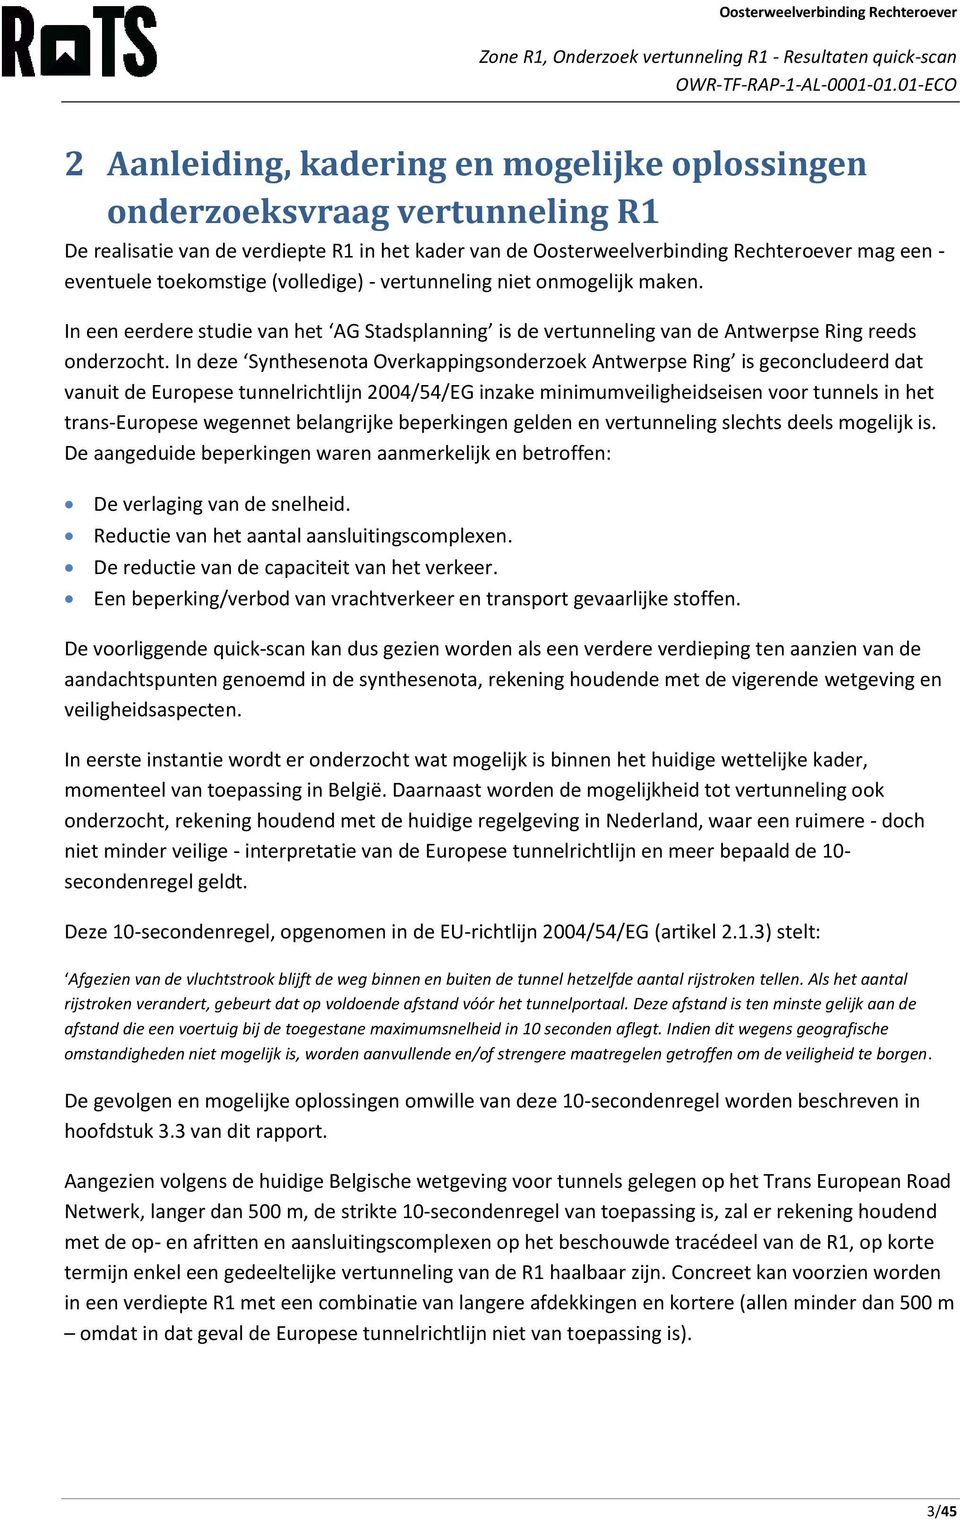 In deze Synthesenota Overkappingsonderzoek Antwerpse Ring is geconcludeerd dat vanuit de Europese tunnelrichtlijn 2004/54/EG inzake minimumveiligheidseisen voor tunnels in het trans-europese wegennet